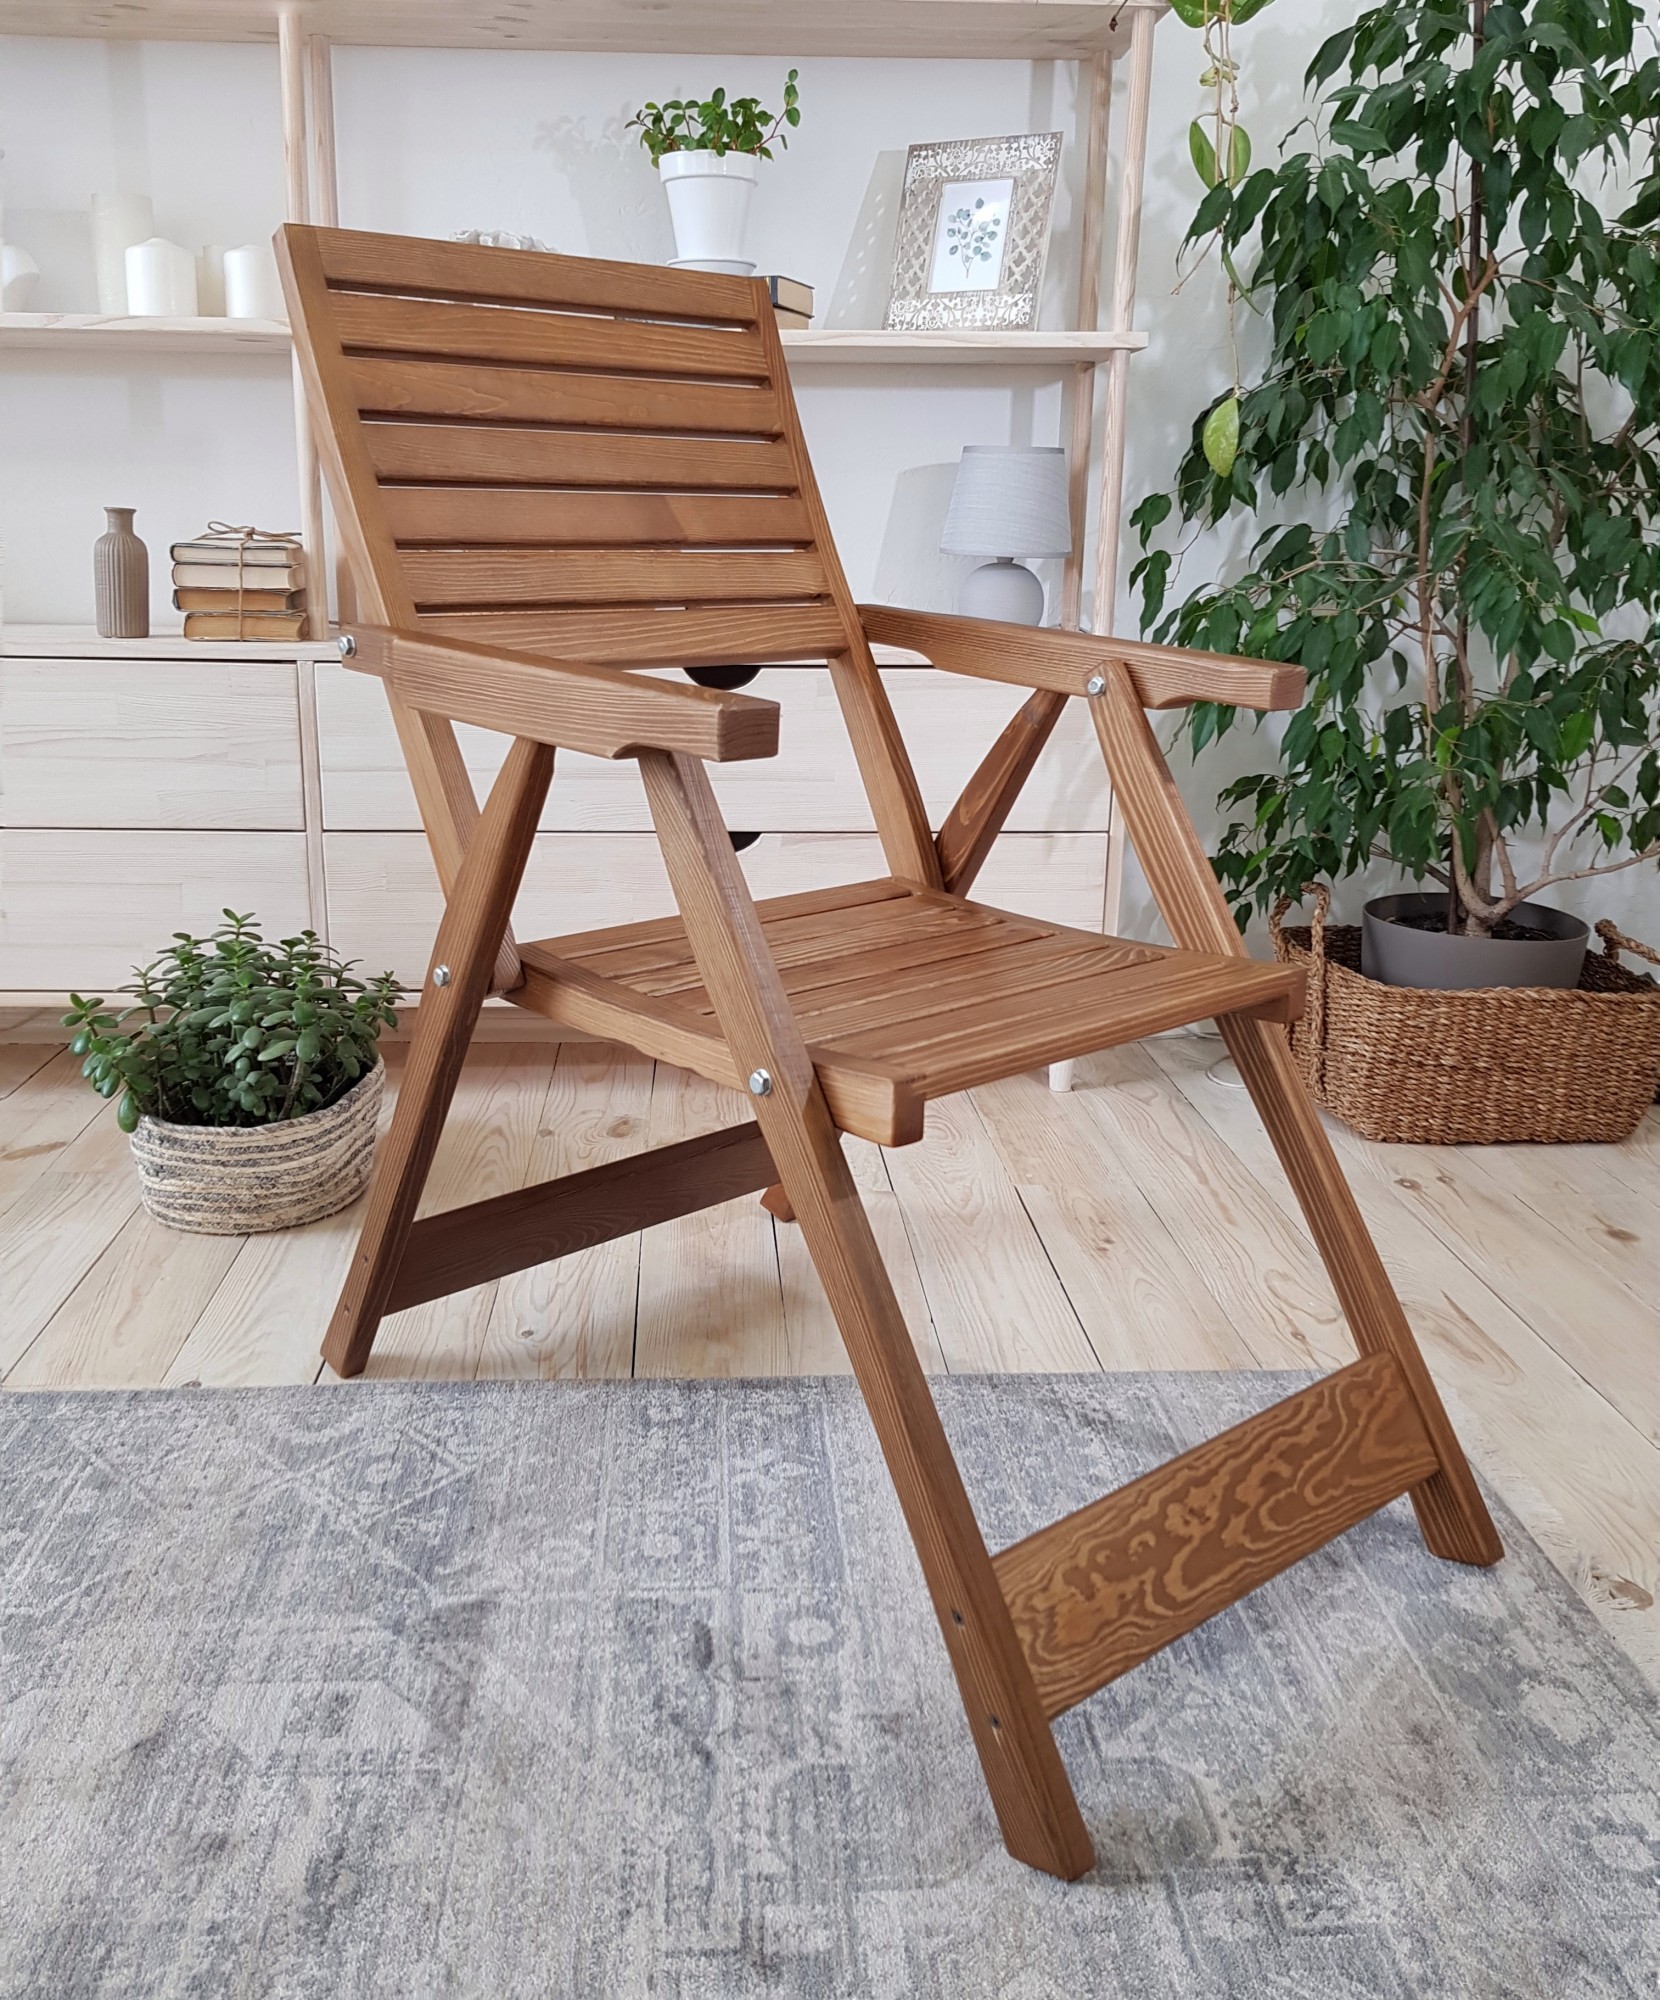 Складное деревянное кресло для дачи купить недорого.